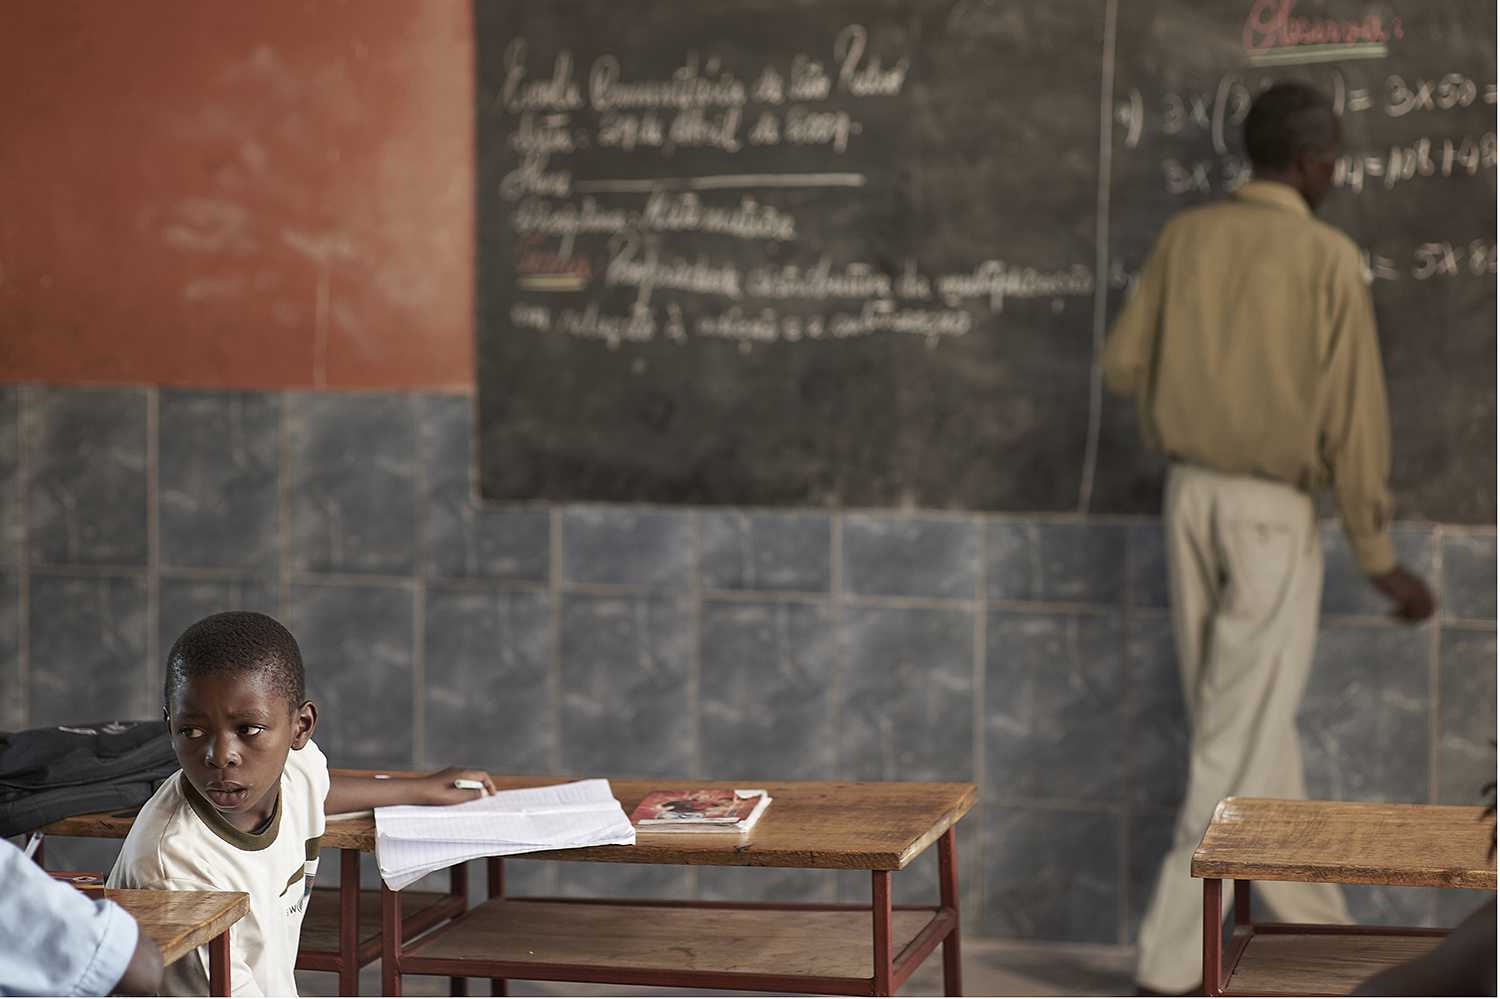 TRA ITALIA E MOZAMBICO: QUANDO L’EDUCAZIONE AVVICINA LE PERSONE. INCONTRO IN MOSTRA